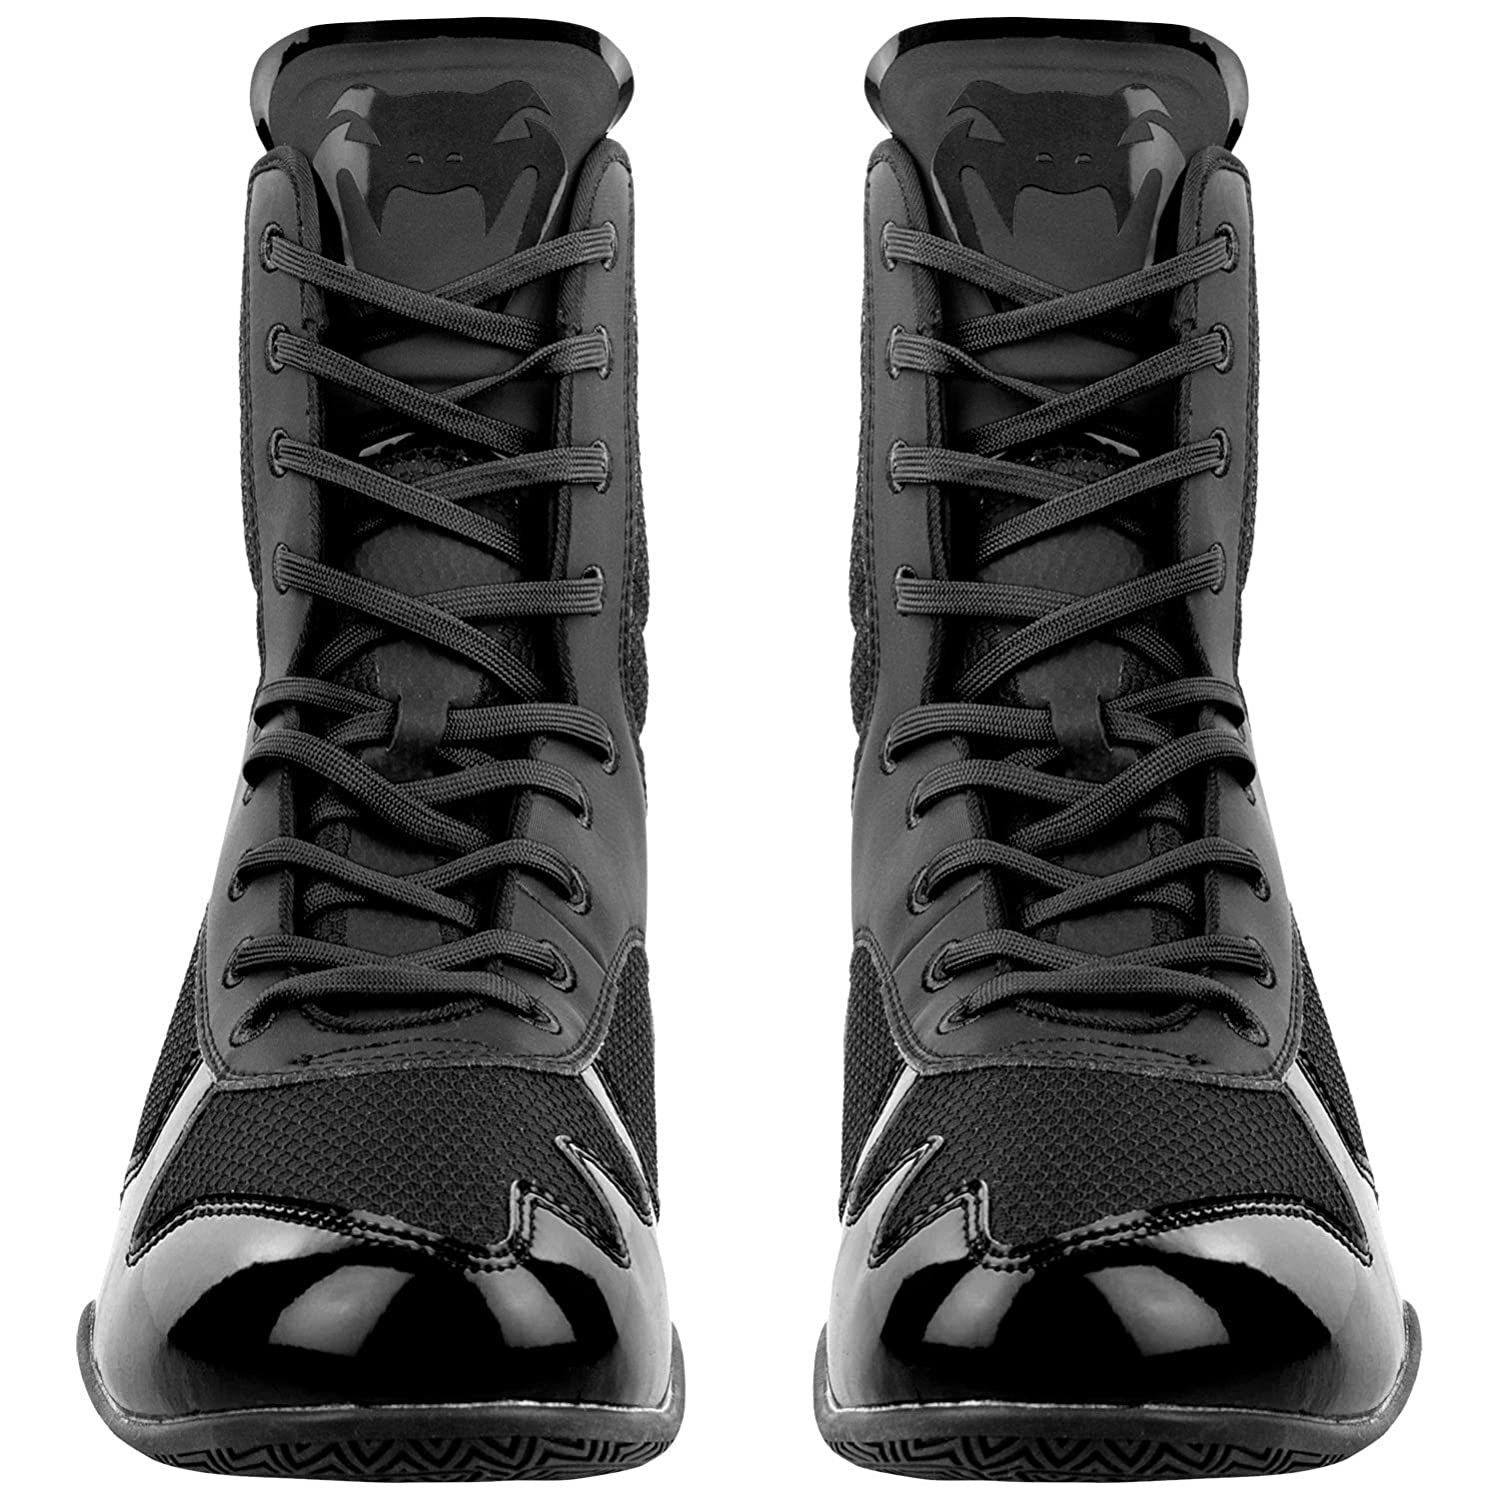 Venum Elite Boxing Shoes - Black - Best Price online Prokicksports.com